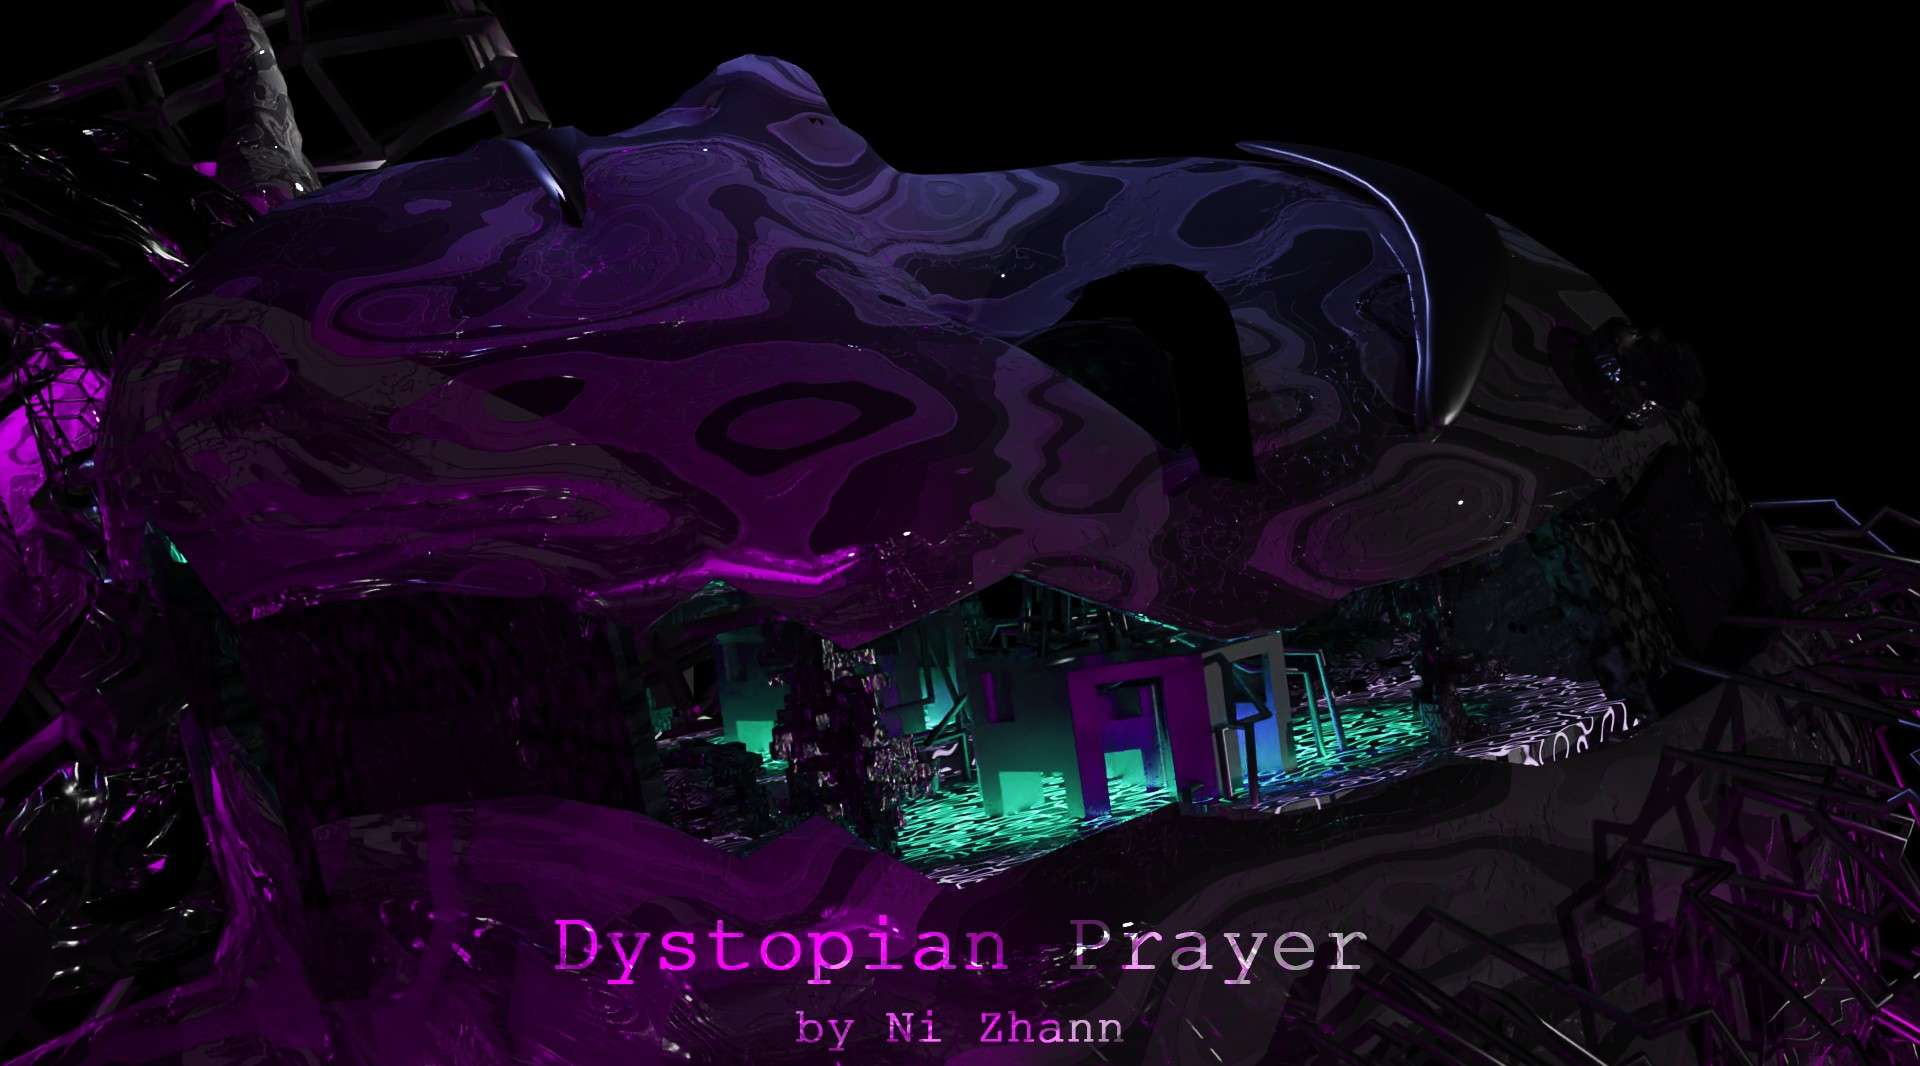 Dystopian Prayer by Ni Zhann